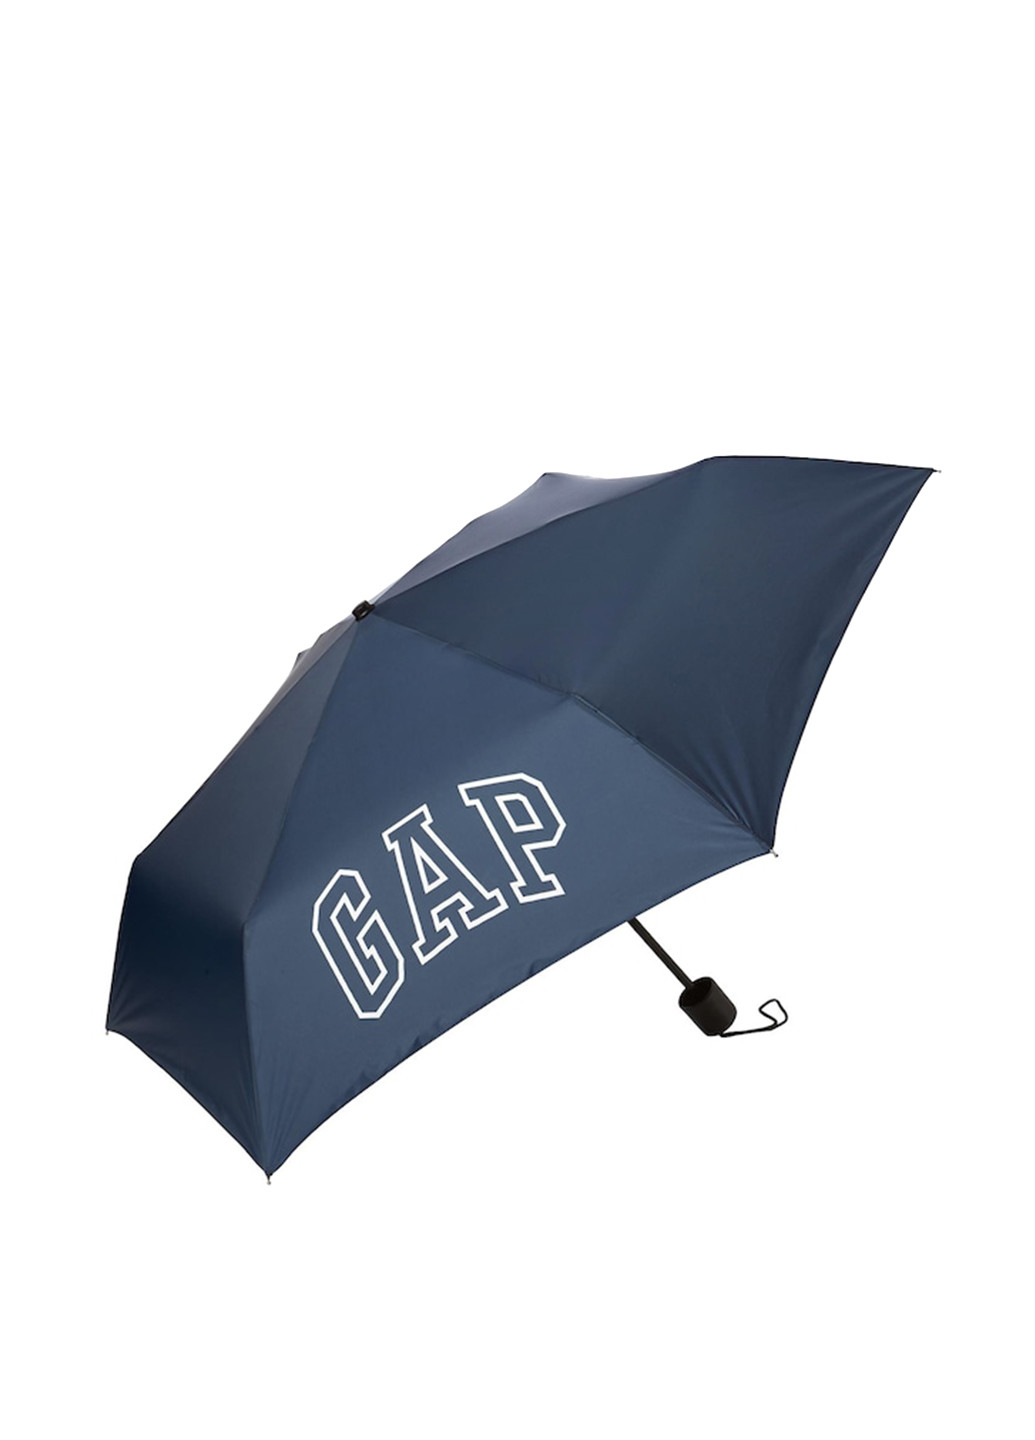 Парасолька Gap складний логотип темно-синя